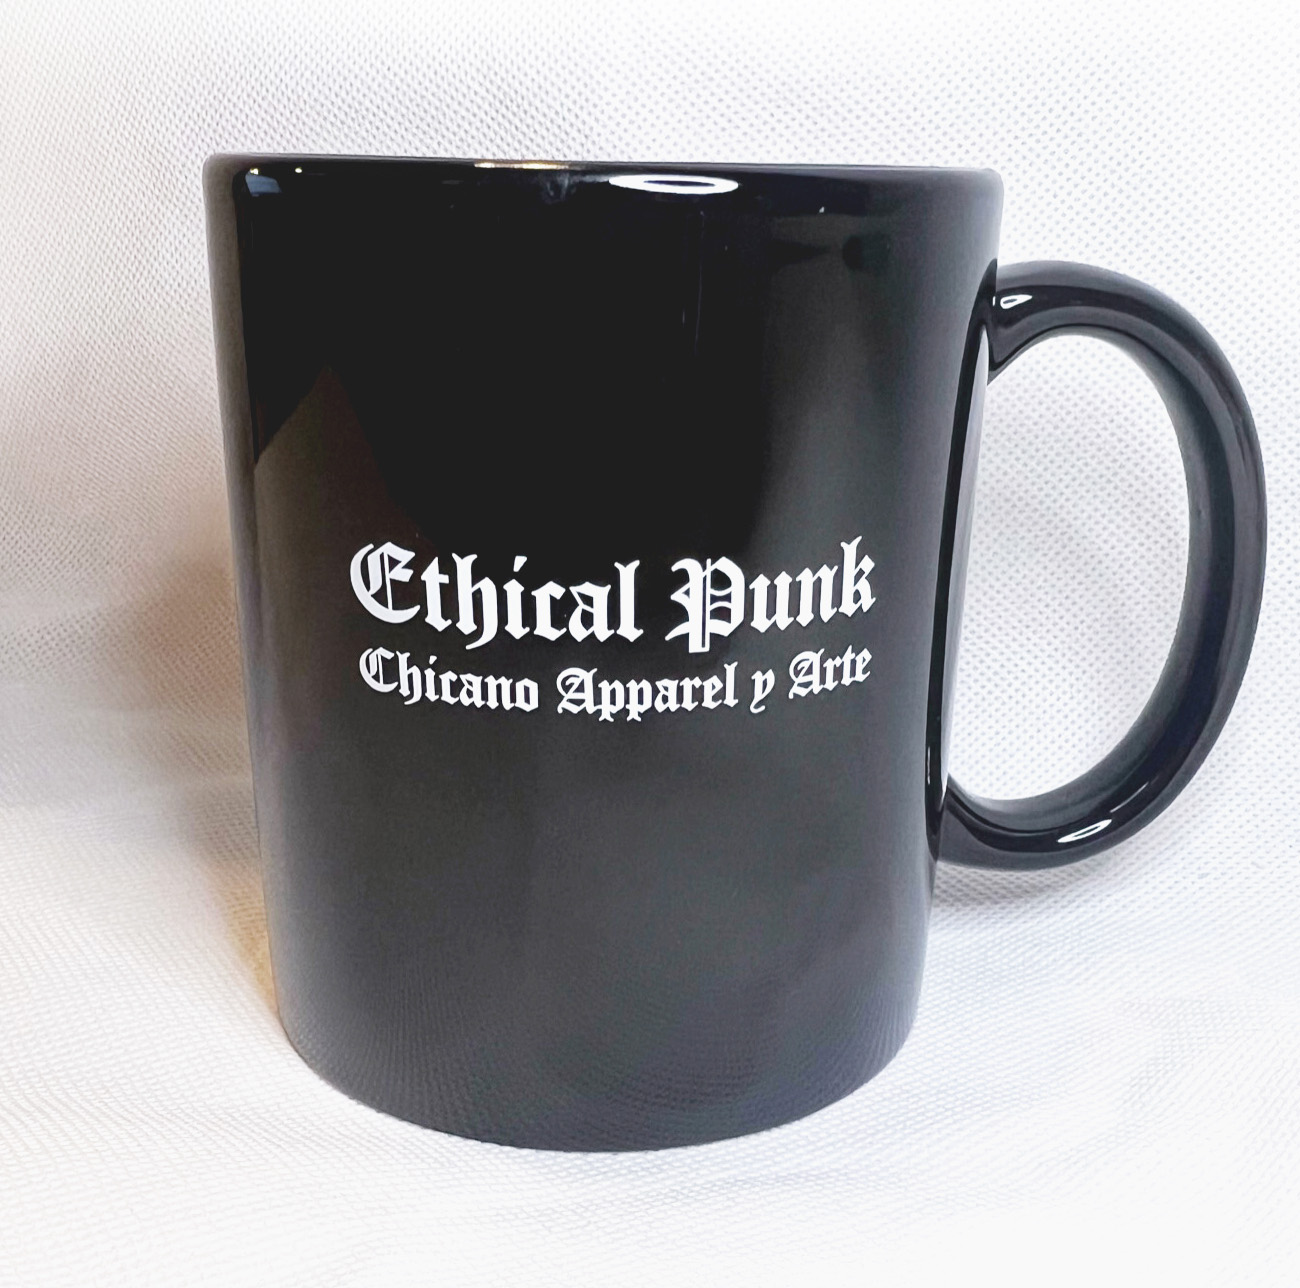 Black Ethical Punk mug on white background